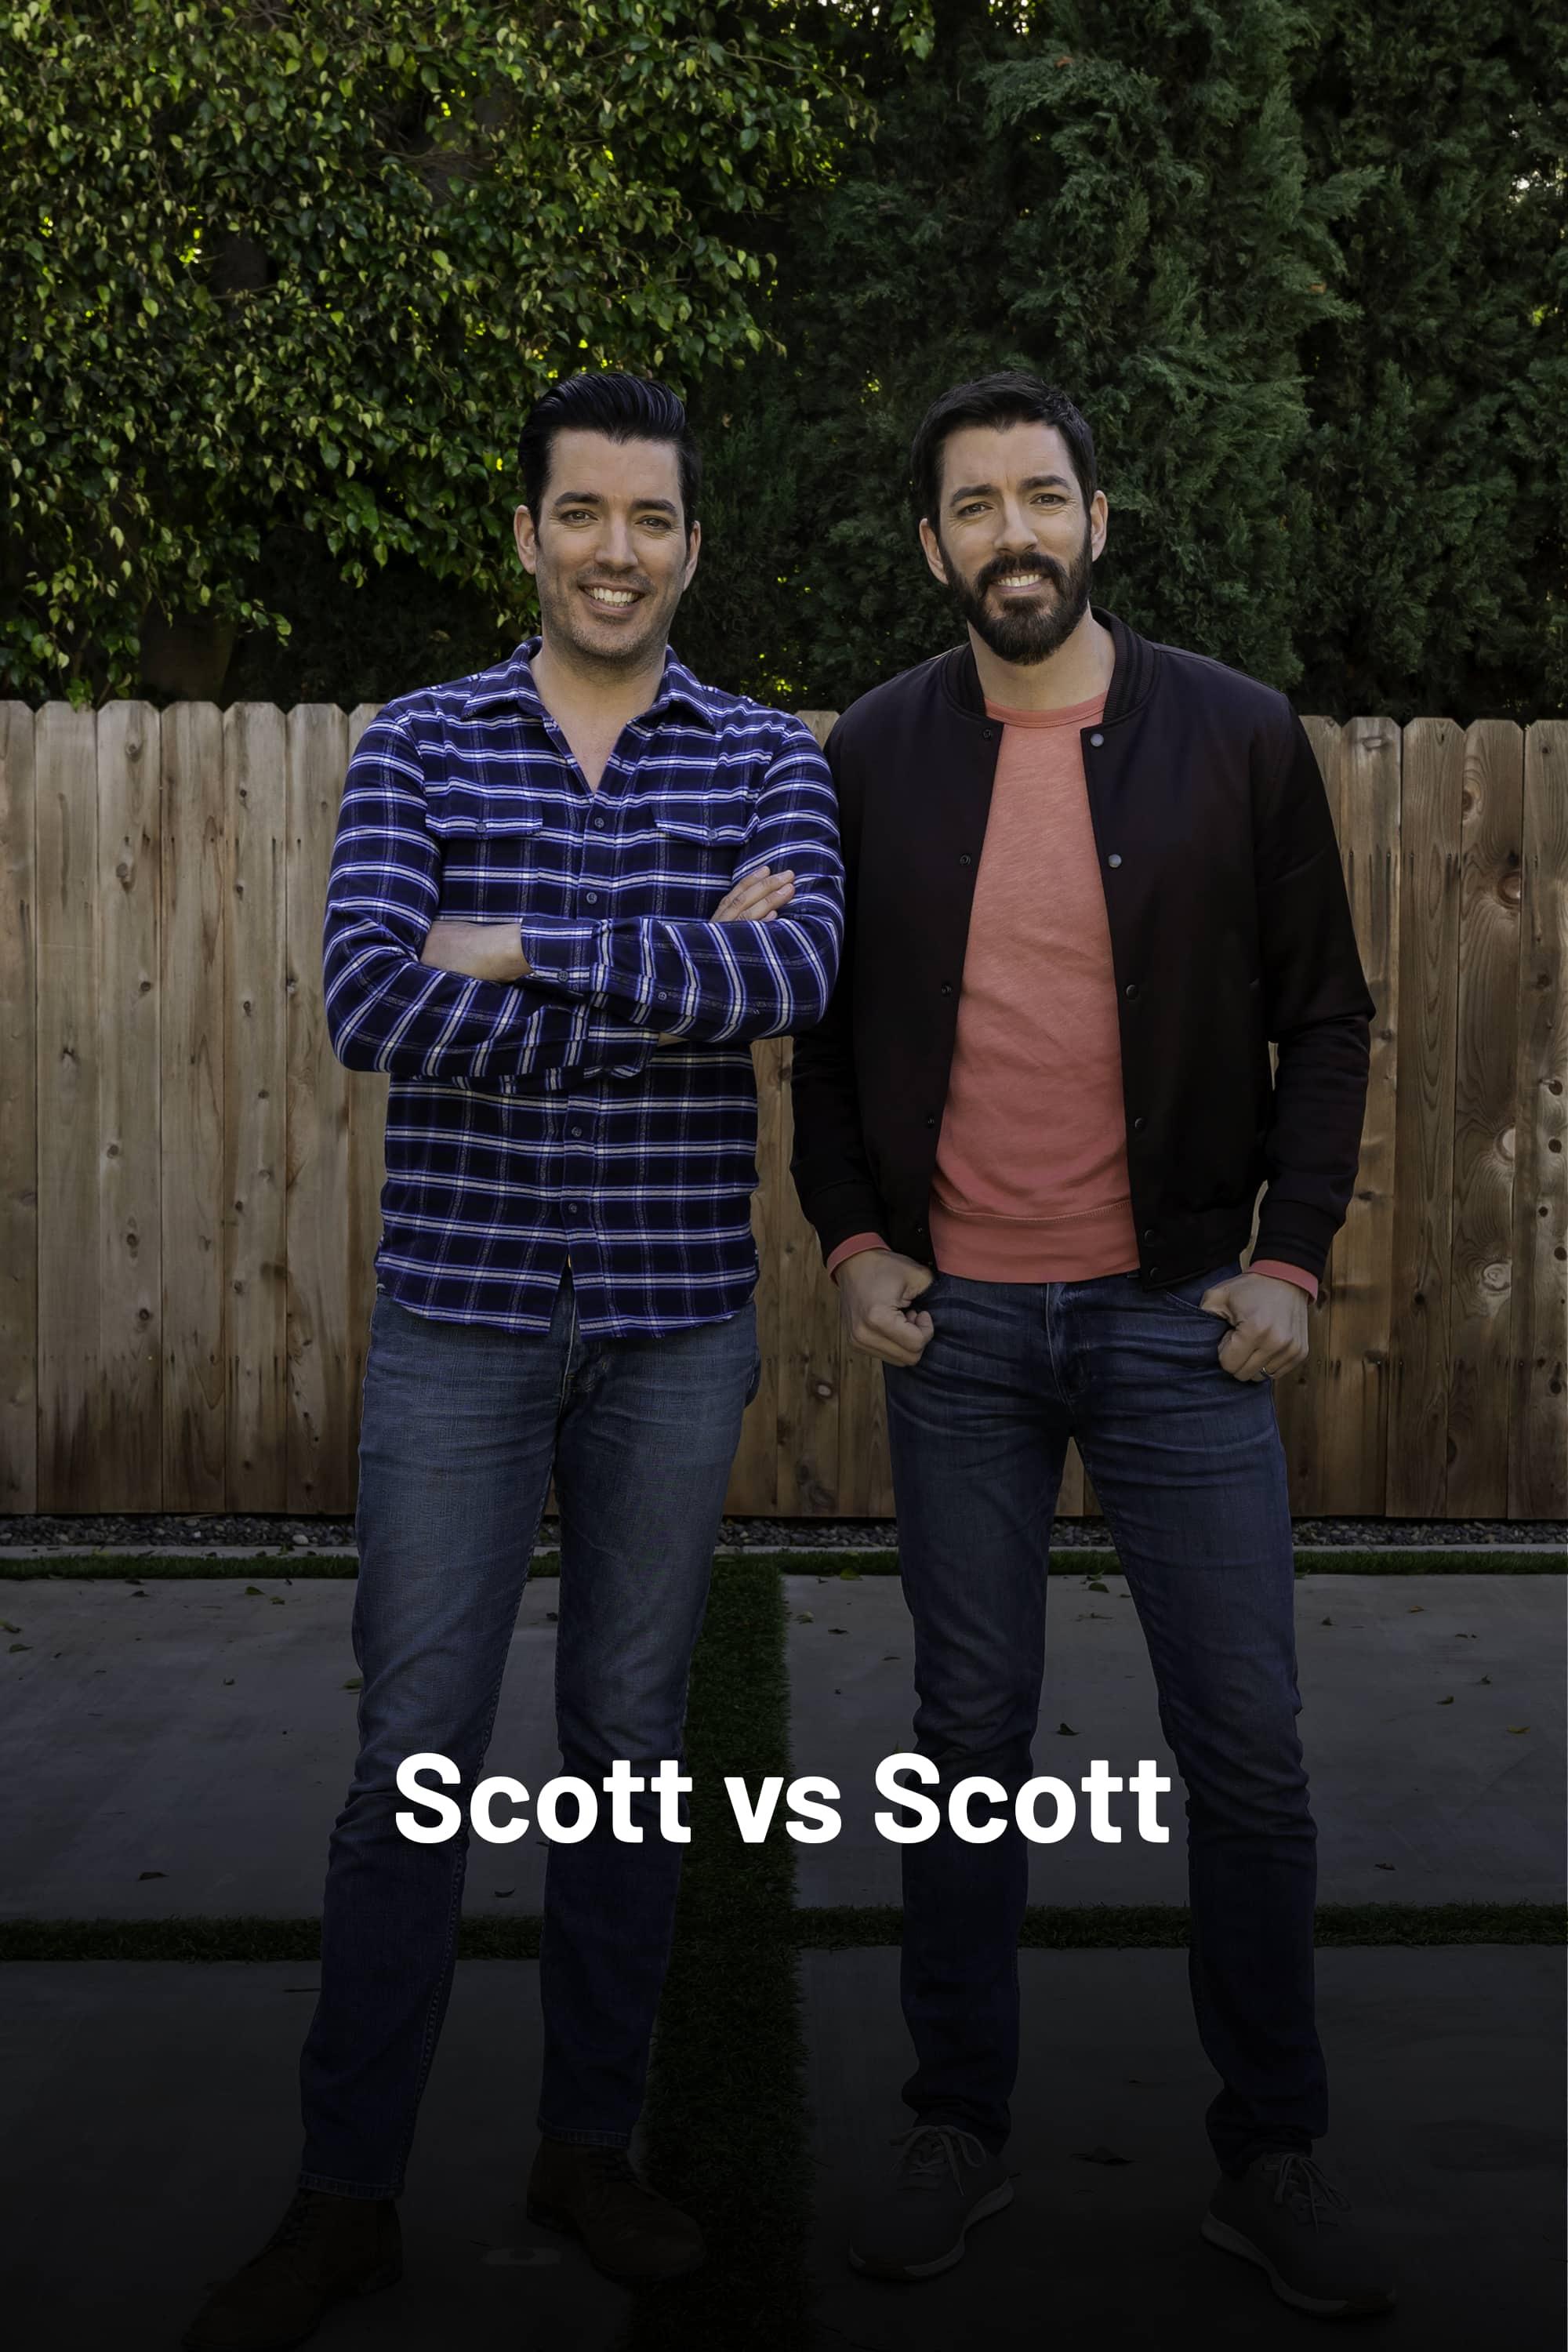 Scott vs Scott